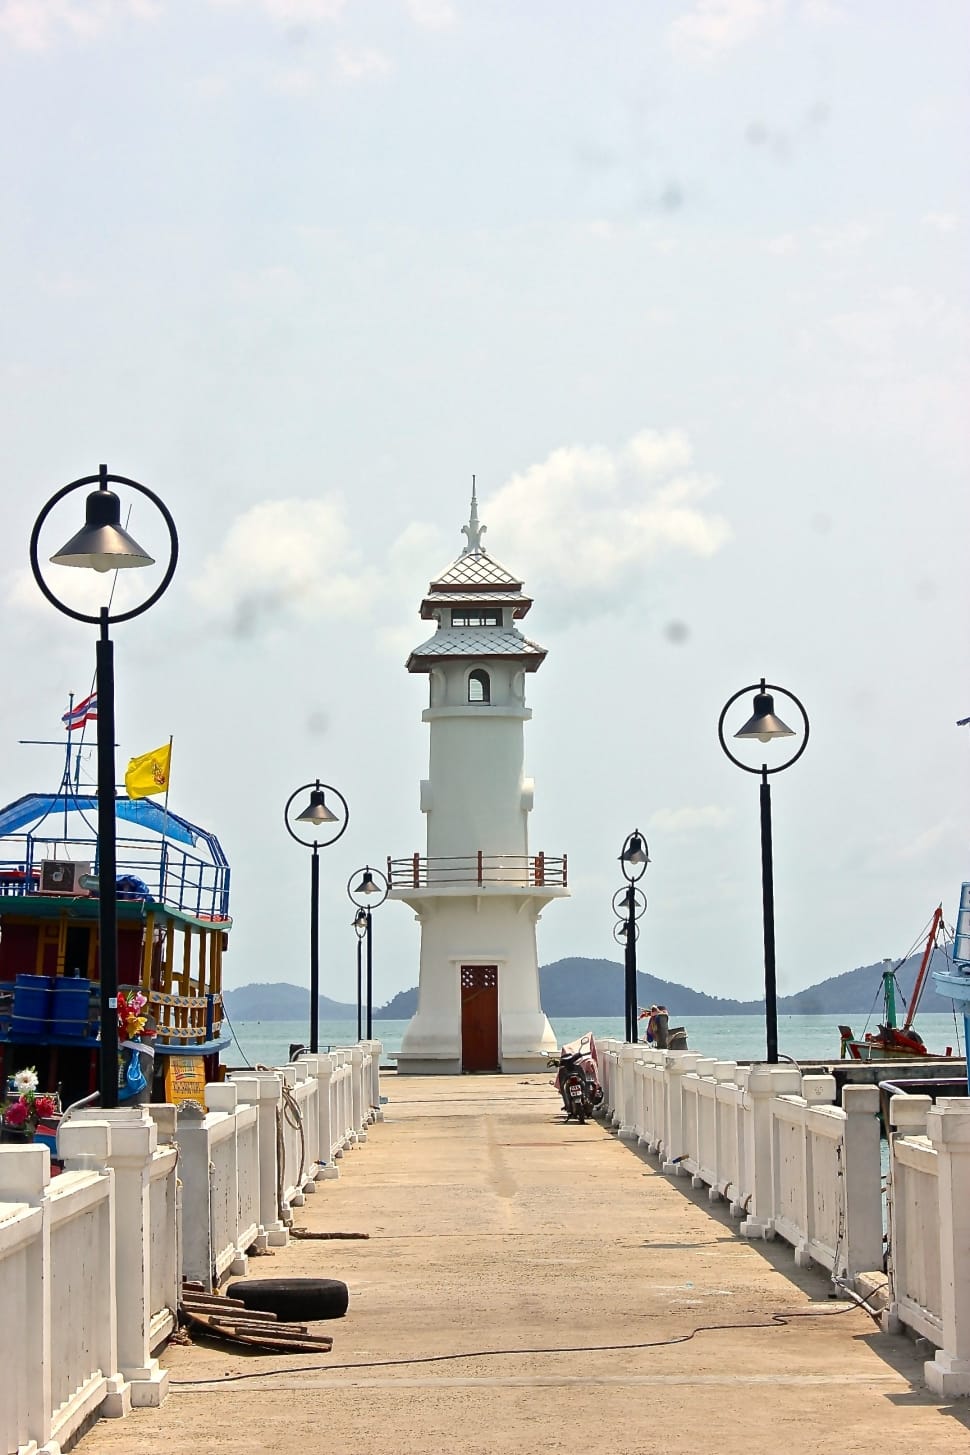 Pier, Lighthouse, Bangbao, Port, travel destinations, sky preview